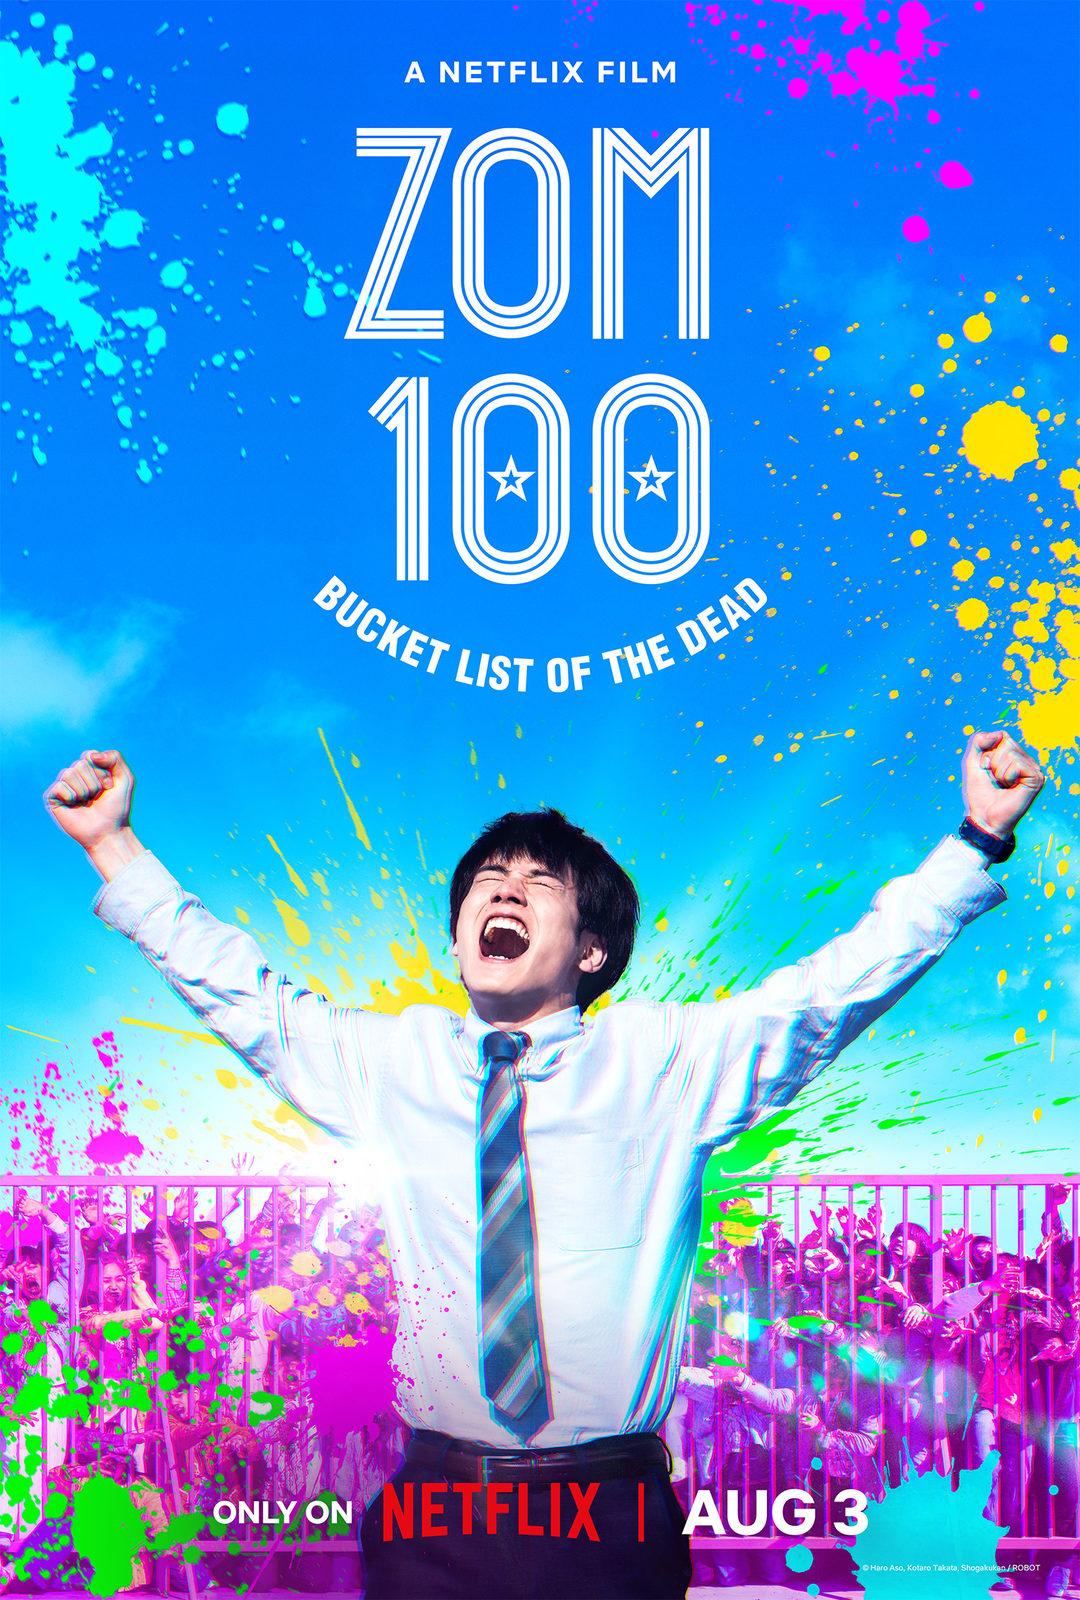 Постер фильма Зомби-апокалипсис и список из 100 дел, что я выполню перед смертью | Zom 100: Bucket List of the Dead